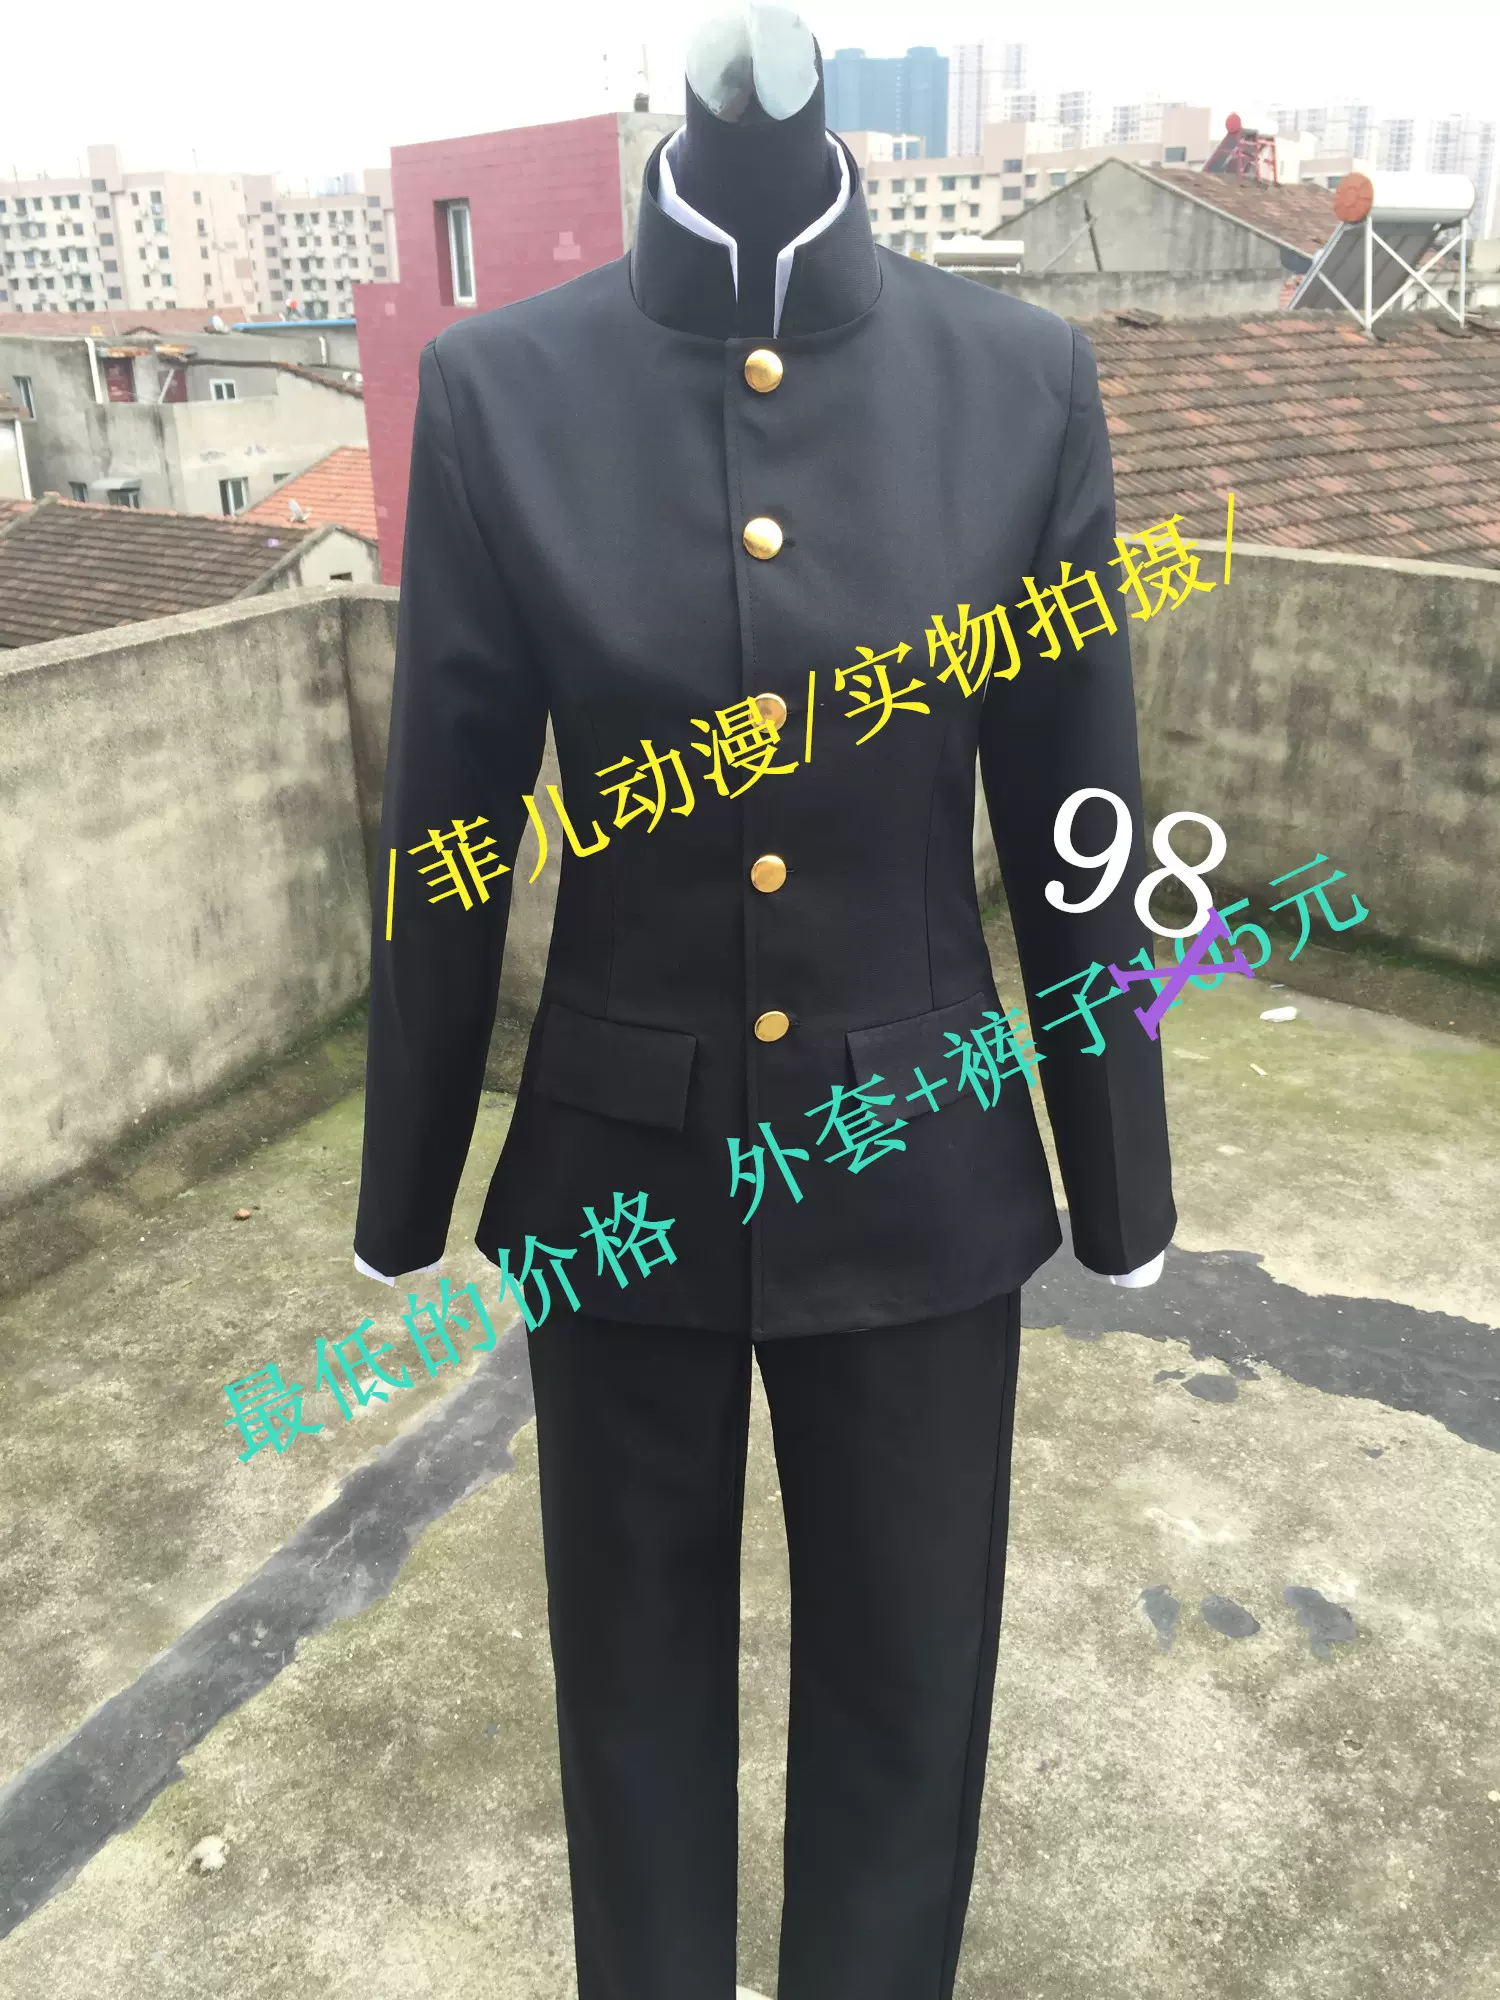 日本dk男子学生制服中山装cos服装万用黑色动漫